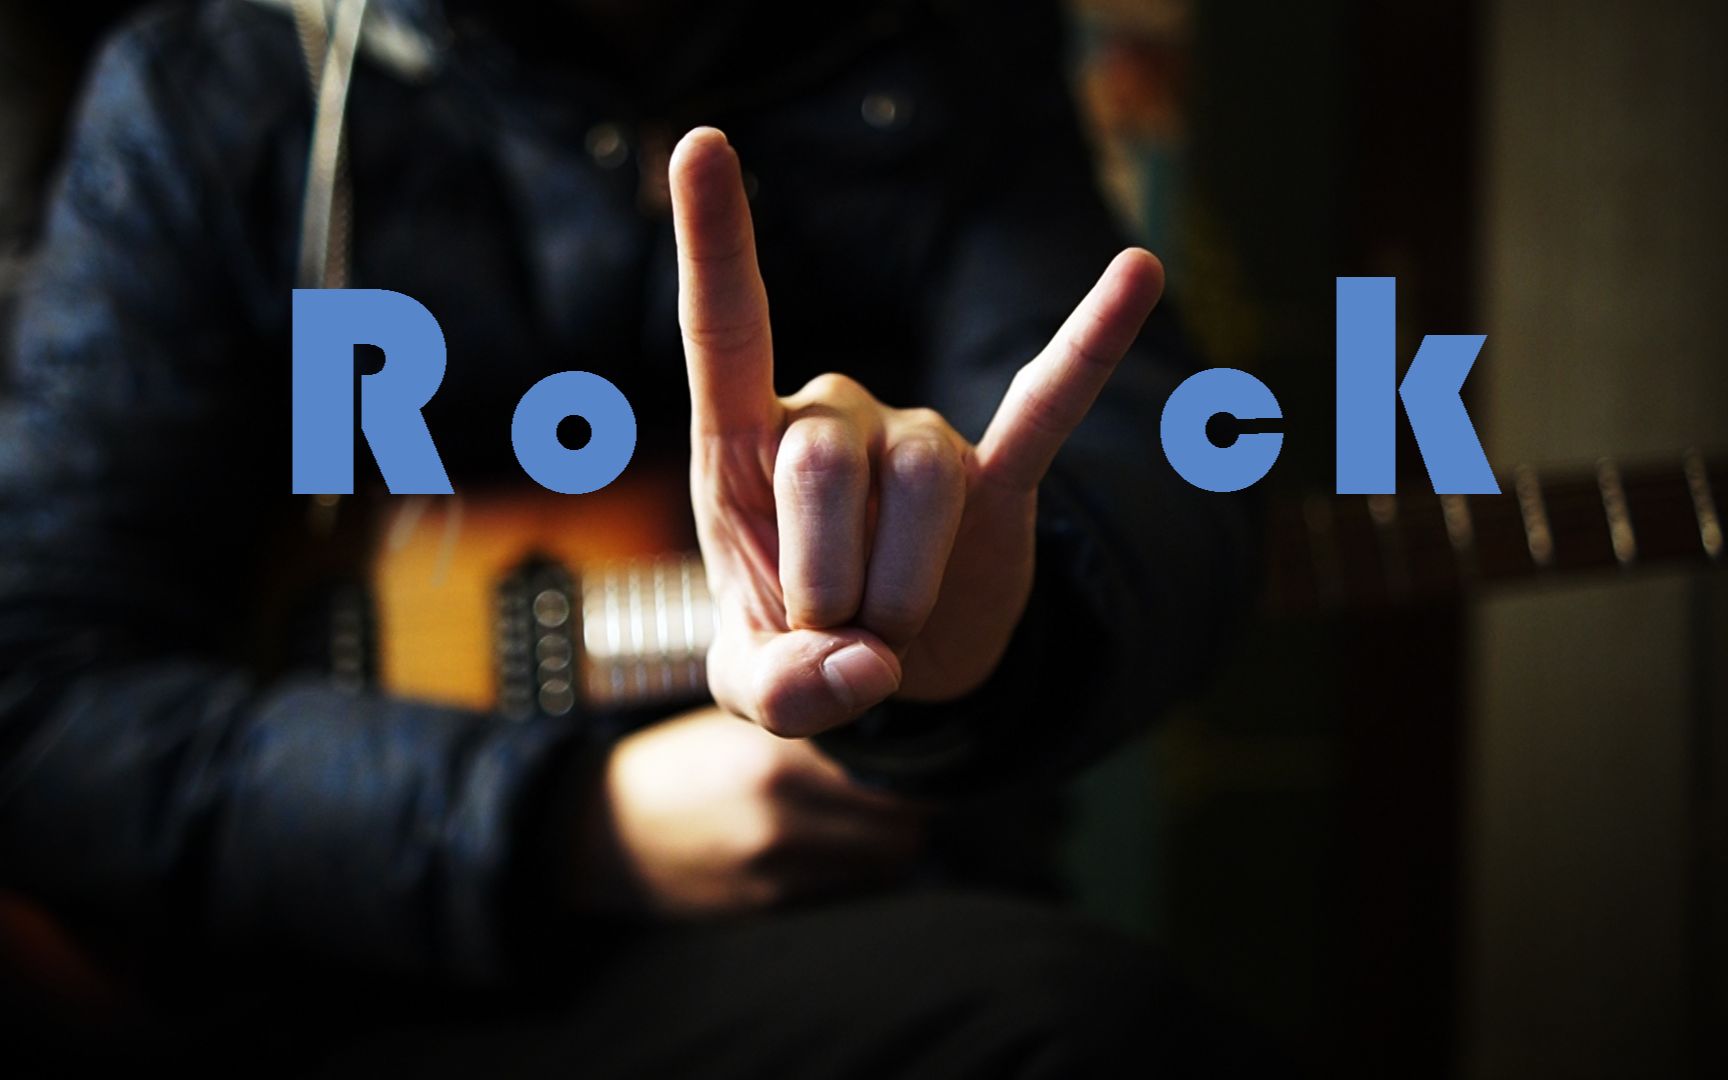 【电吉他】用摇滚手势来弹吉他08rock power chord强力和弦